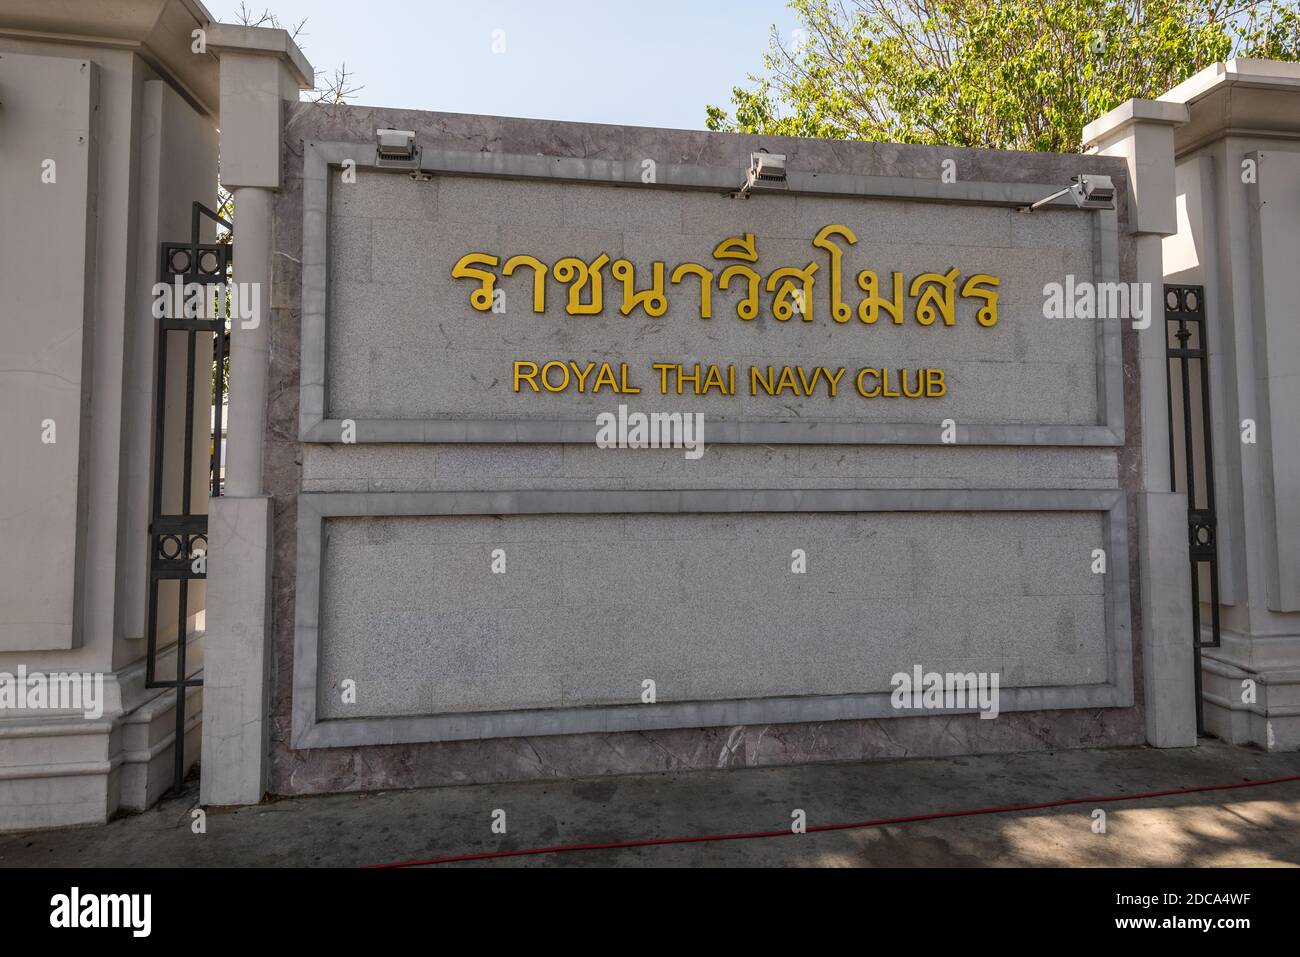 Bangkok, Thailand - 7. Dezember 2019: Die Inschrift auf dem Zaun in gelben Buchstaben - Royal Thai Navy Club in Bangkok, Thailand. Stockfoto